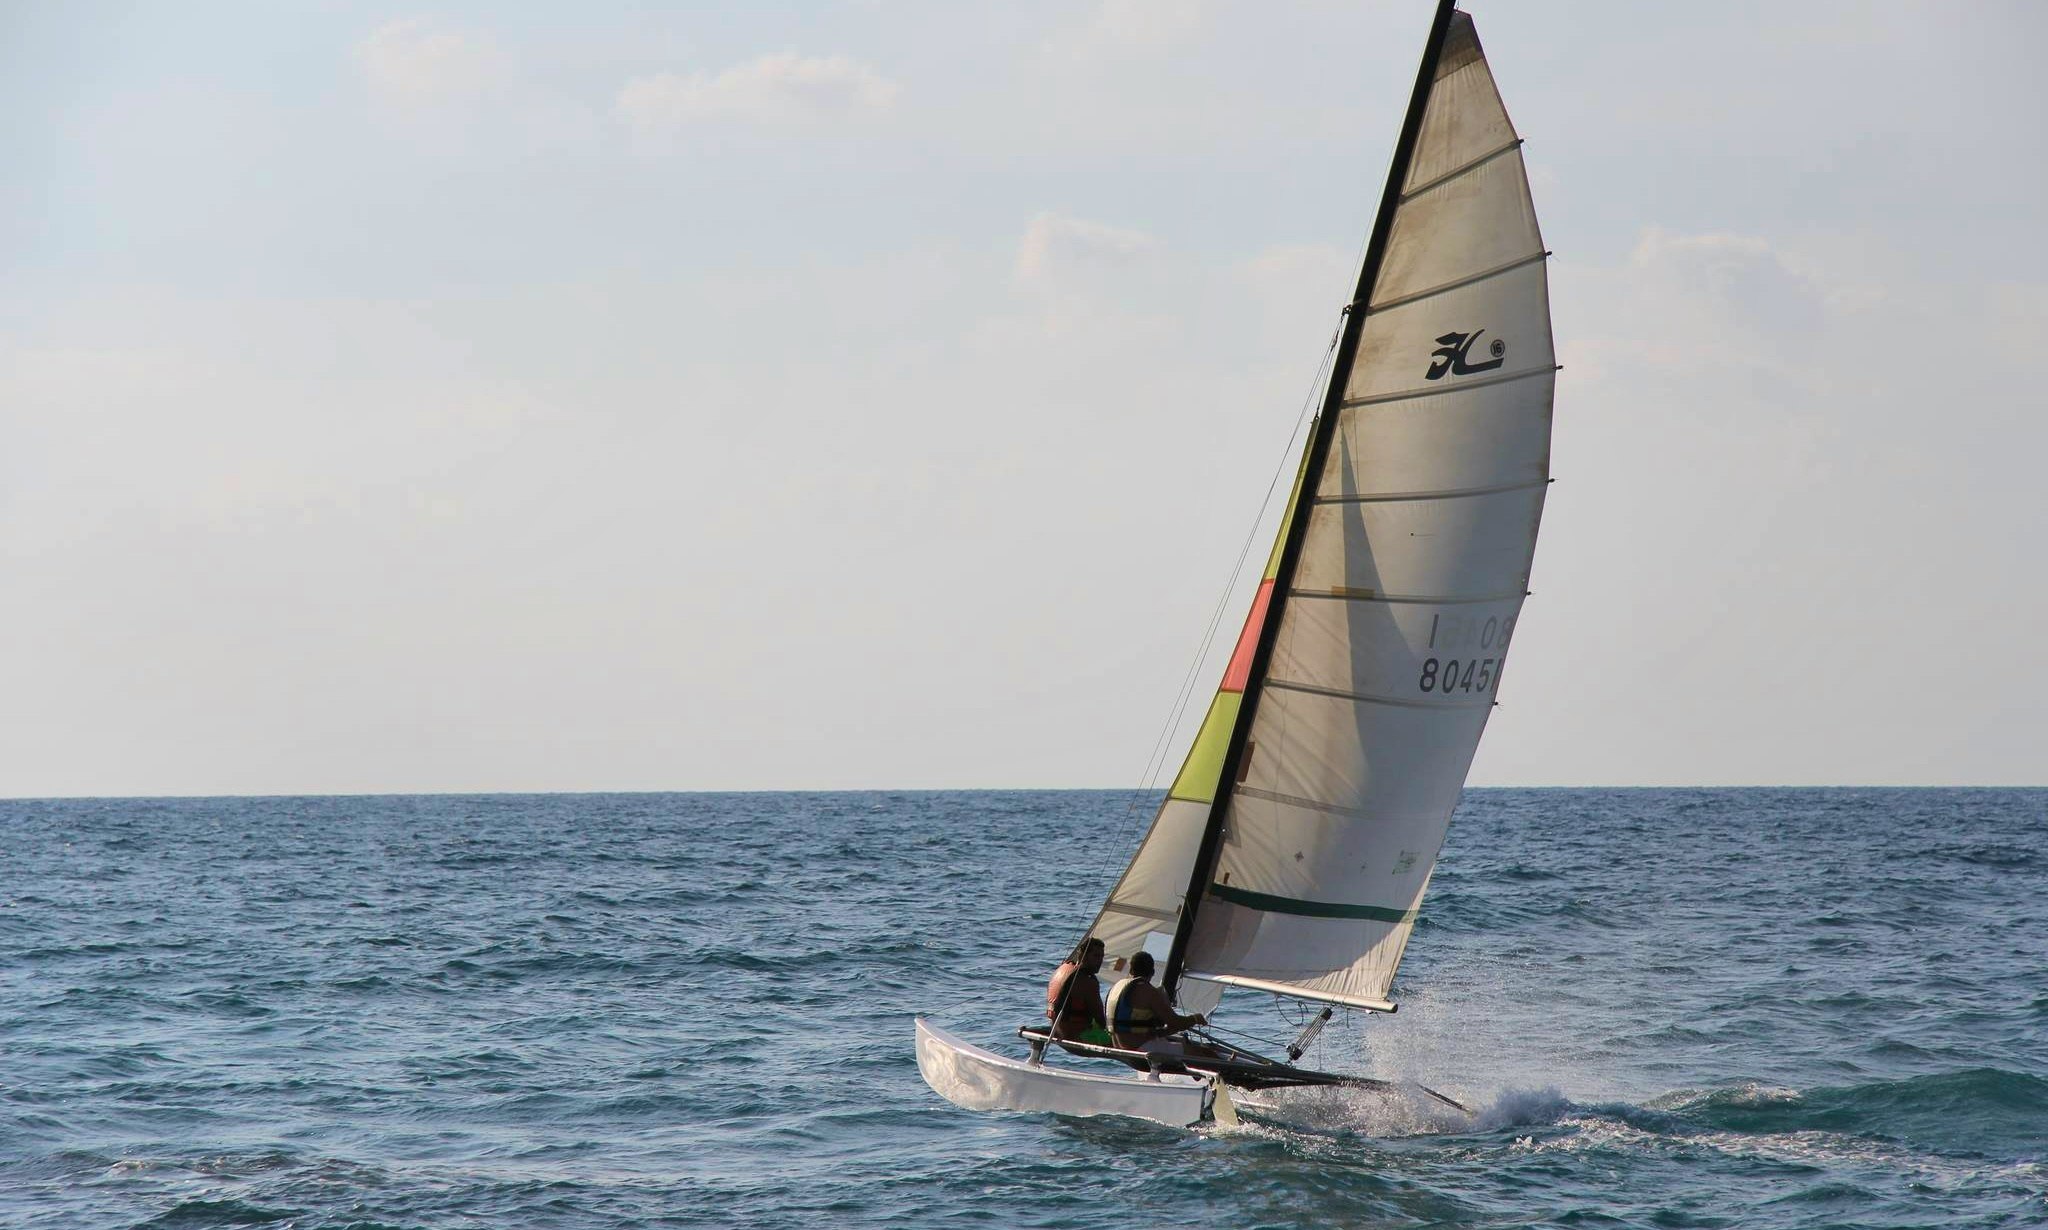 'Catamaran Hobie 16' Rental and Sailing Lessons at the 